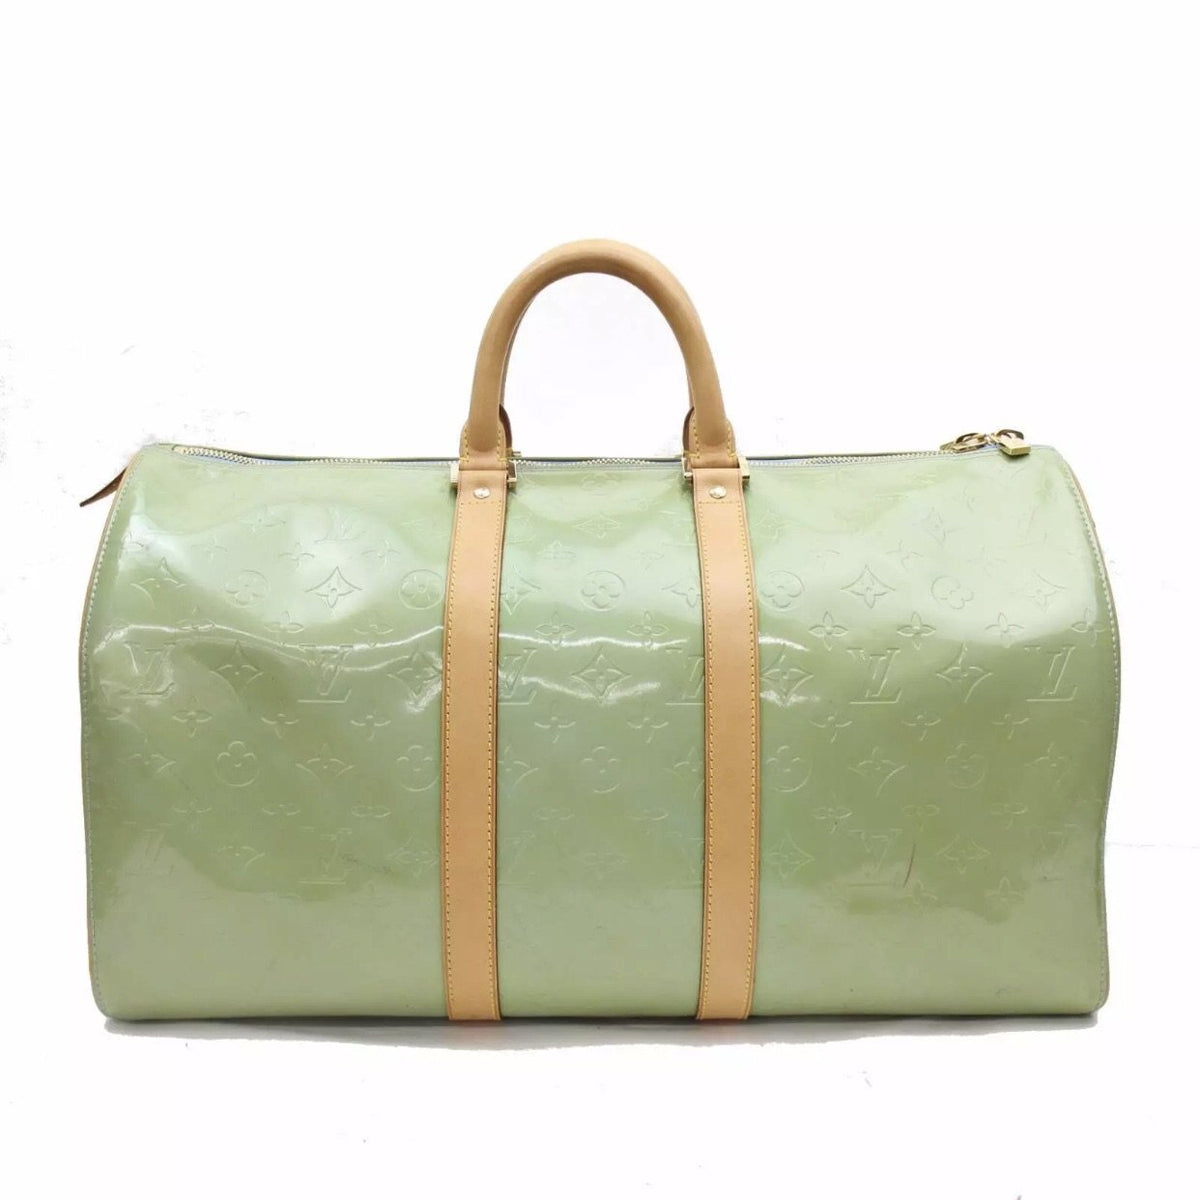 Louis Vuitton Keepall, Louis Vuitton Keepall Handbags